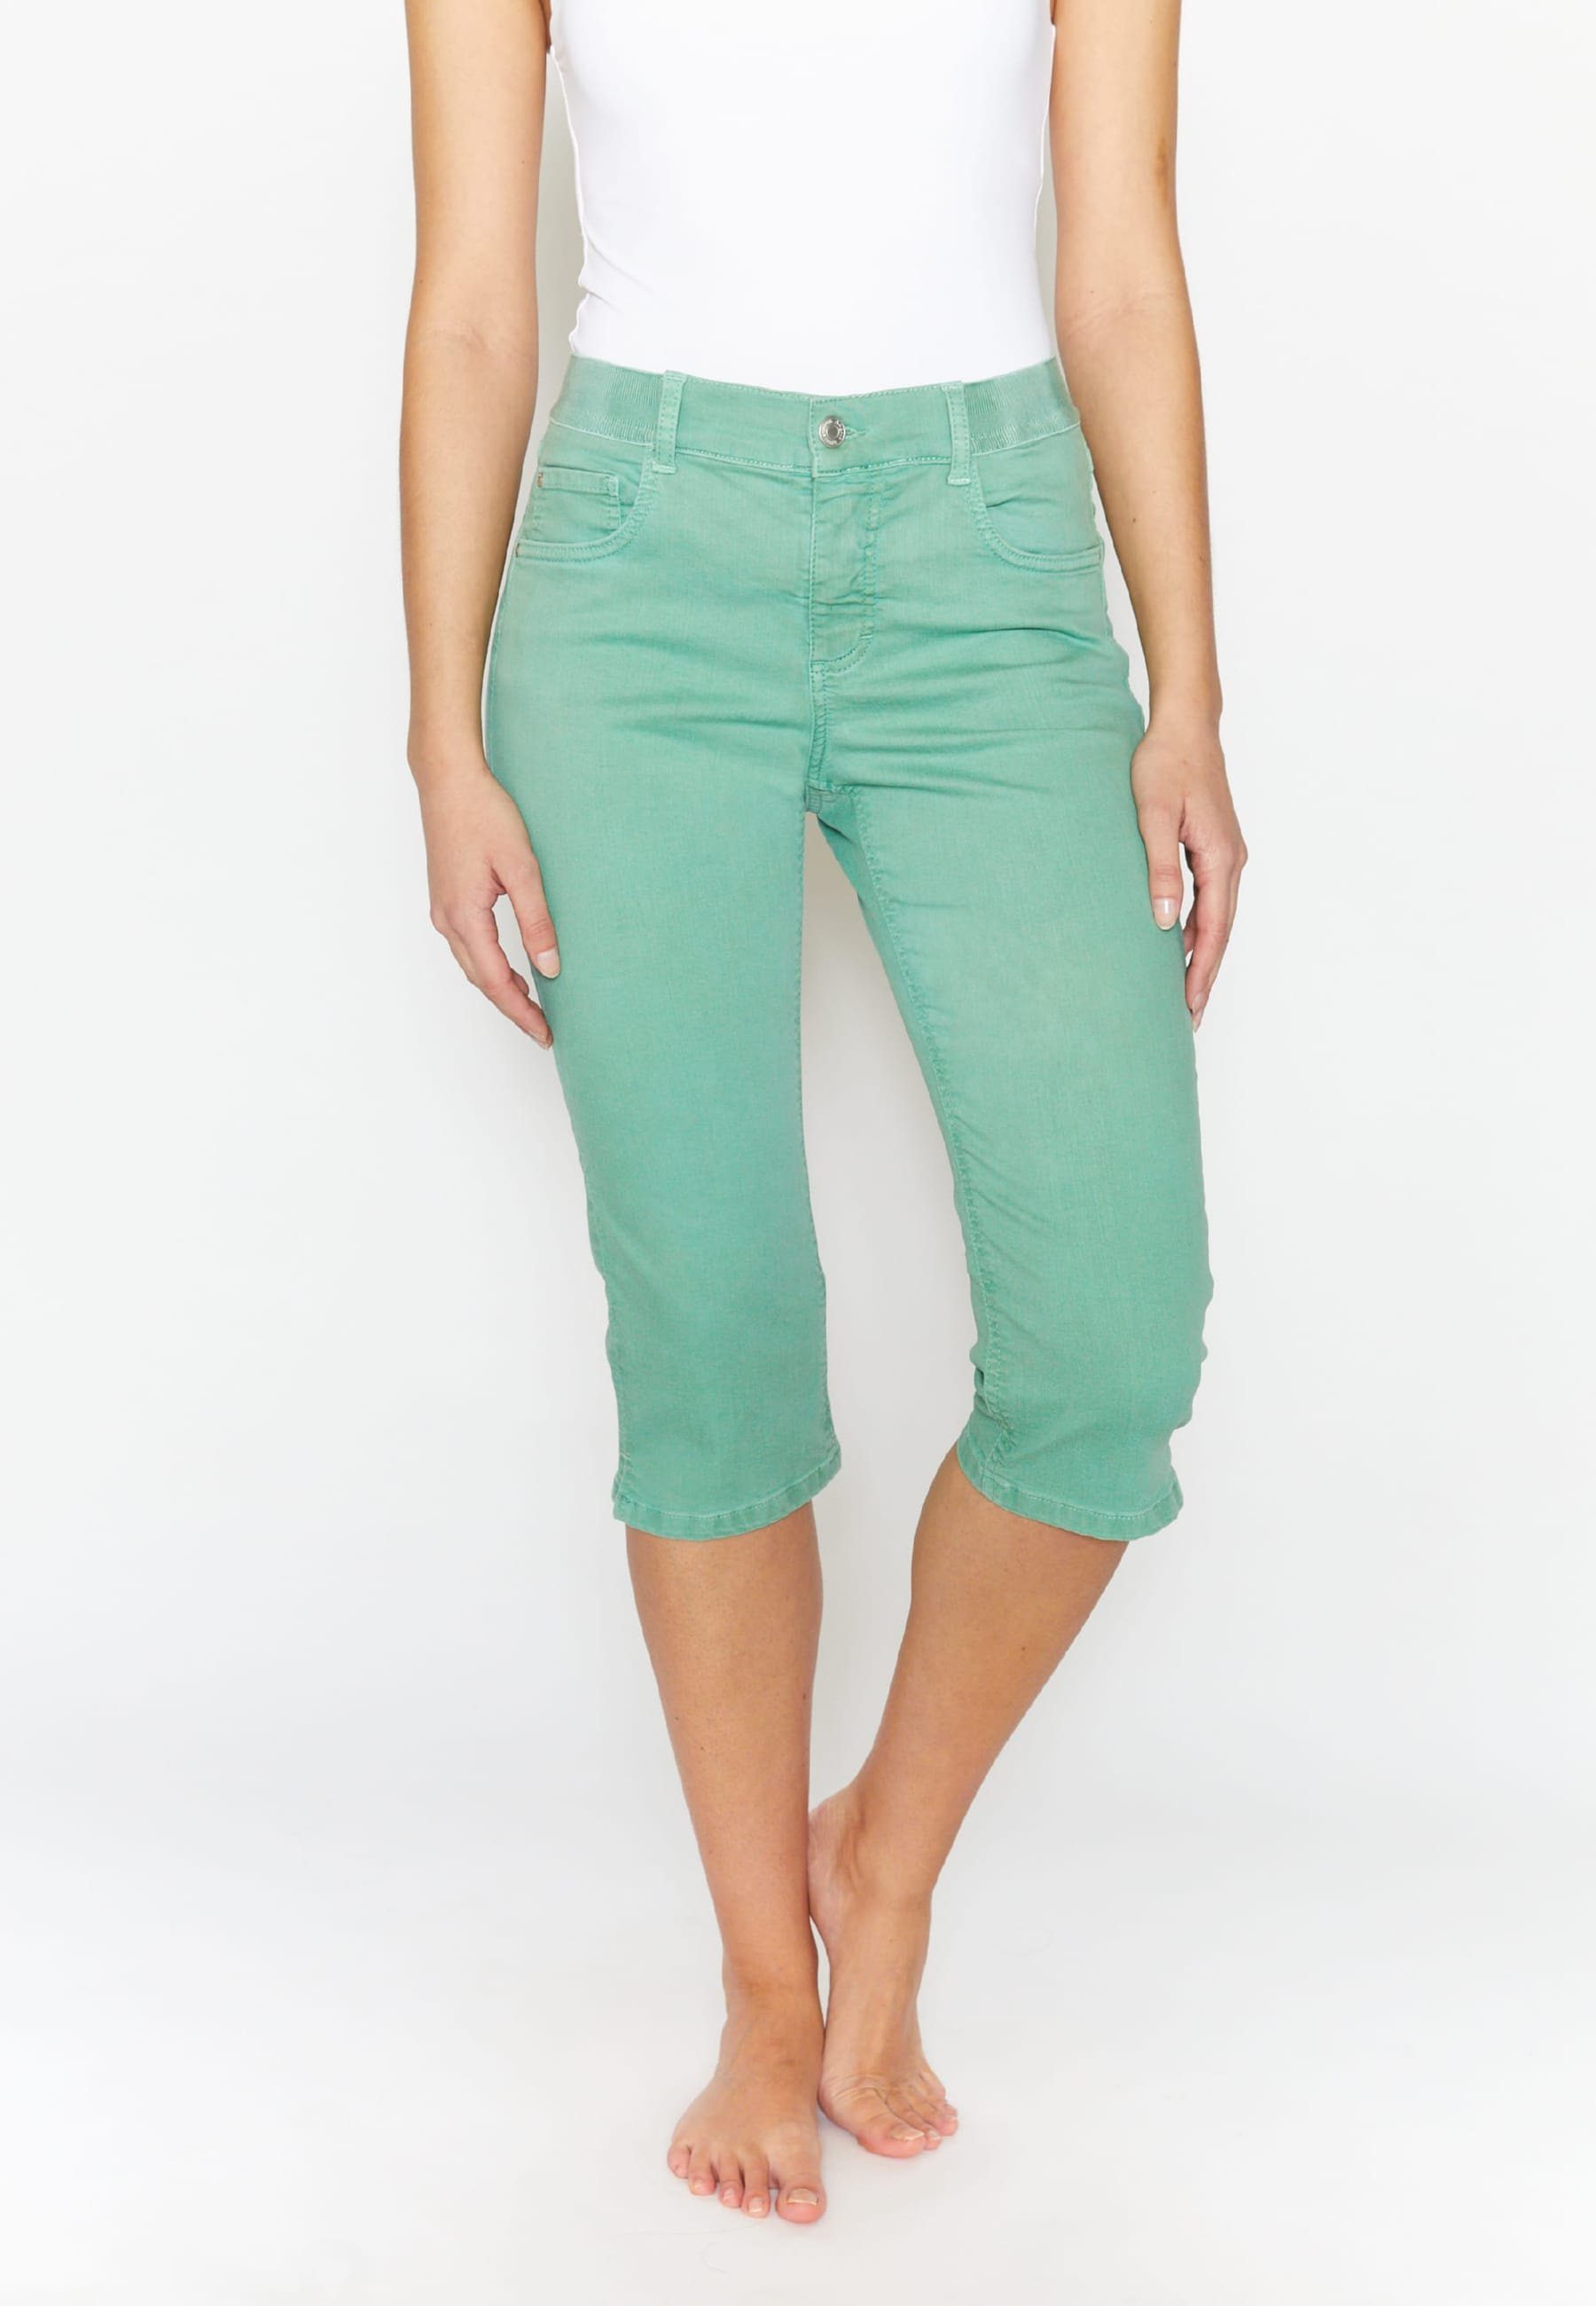 OSFA grün Coloured Label-Applikationen Slim-fit-Jeans ANGELS mit mit Denim Jeans Capri